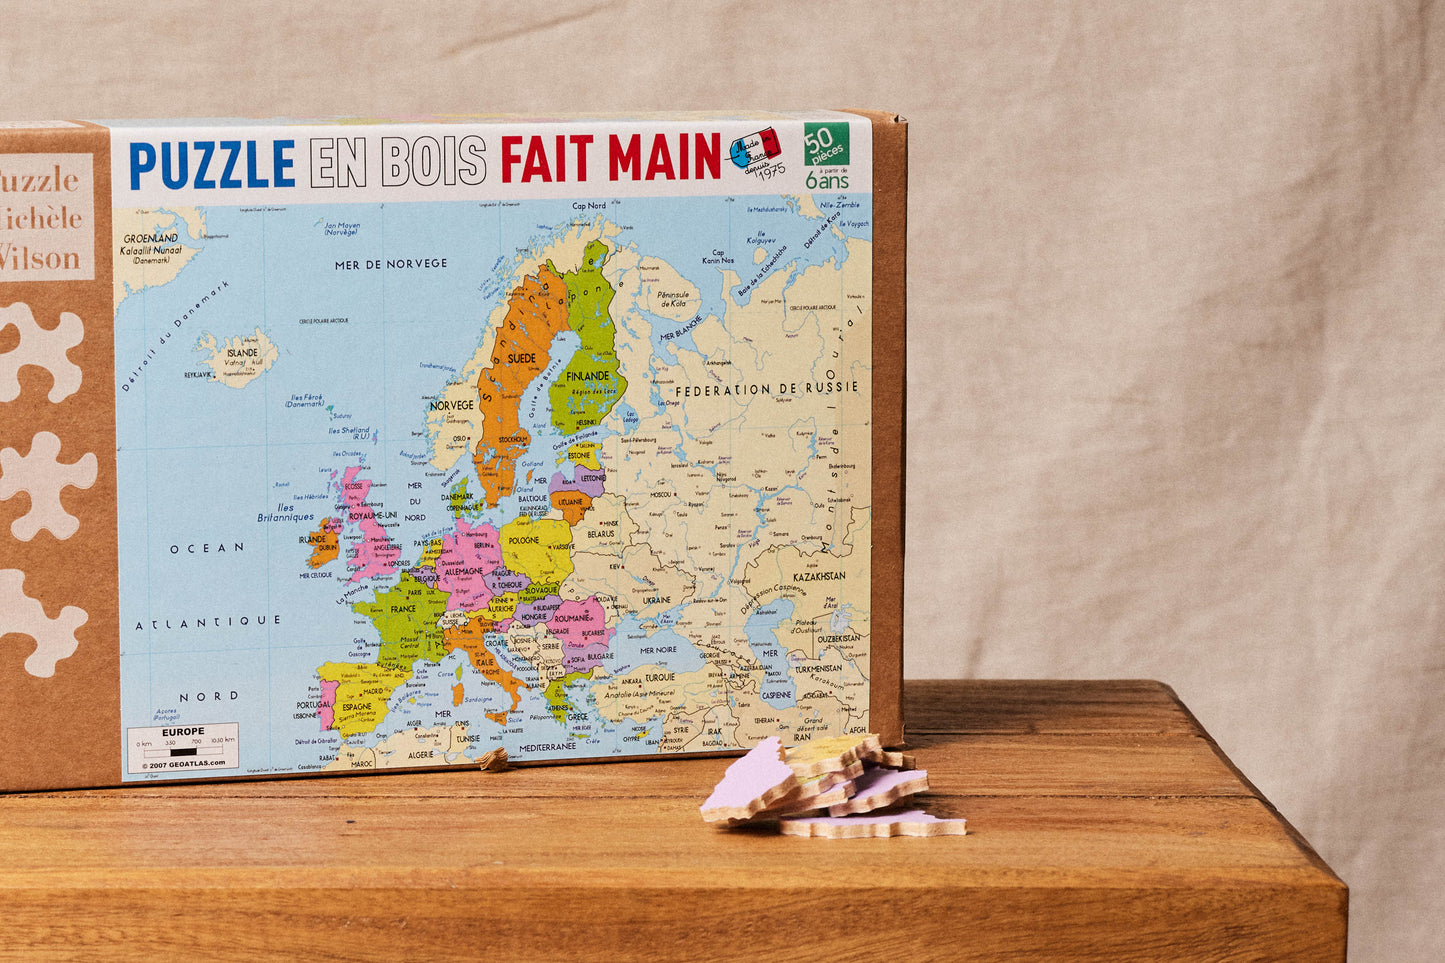 Puzzle Michèle Wilson - La Carte d'Europe